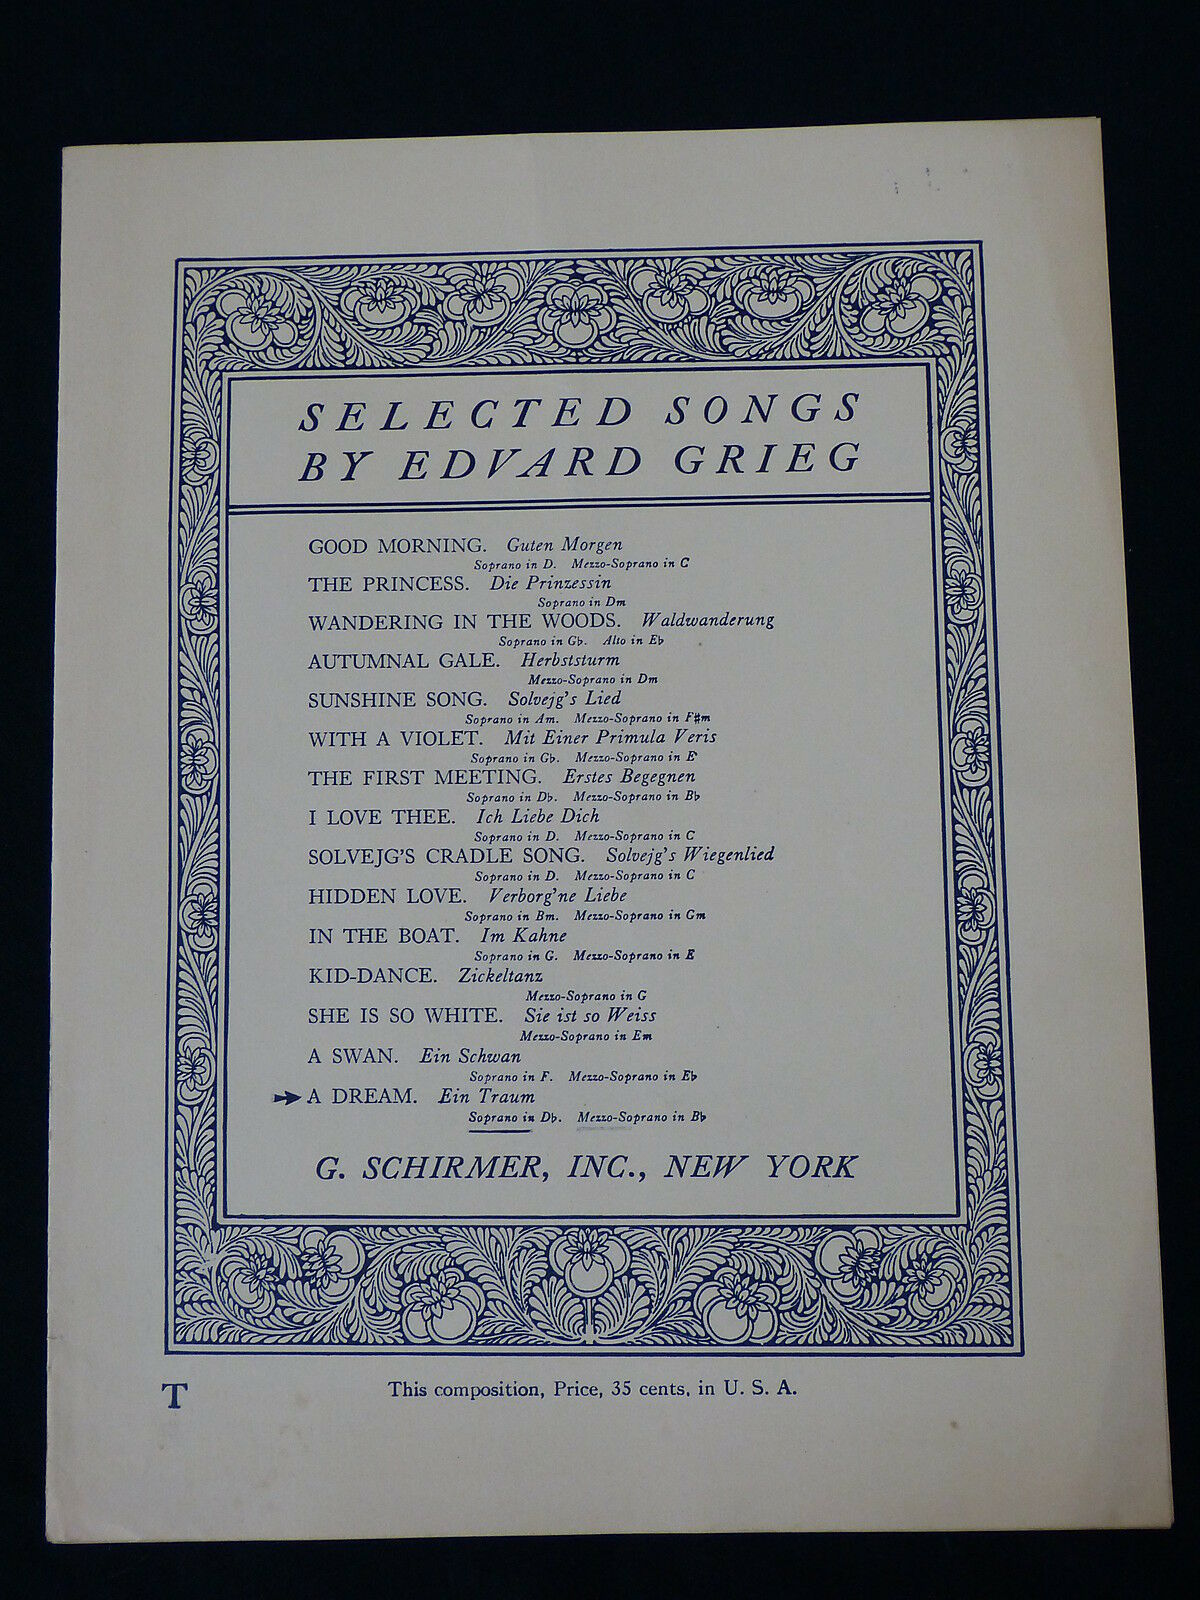 Antique Sheet Music - Edvard Grieg "a Deam - Ein Traum", G. Schirmer, 1909